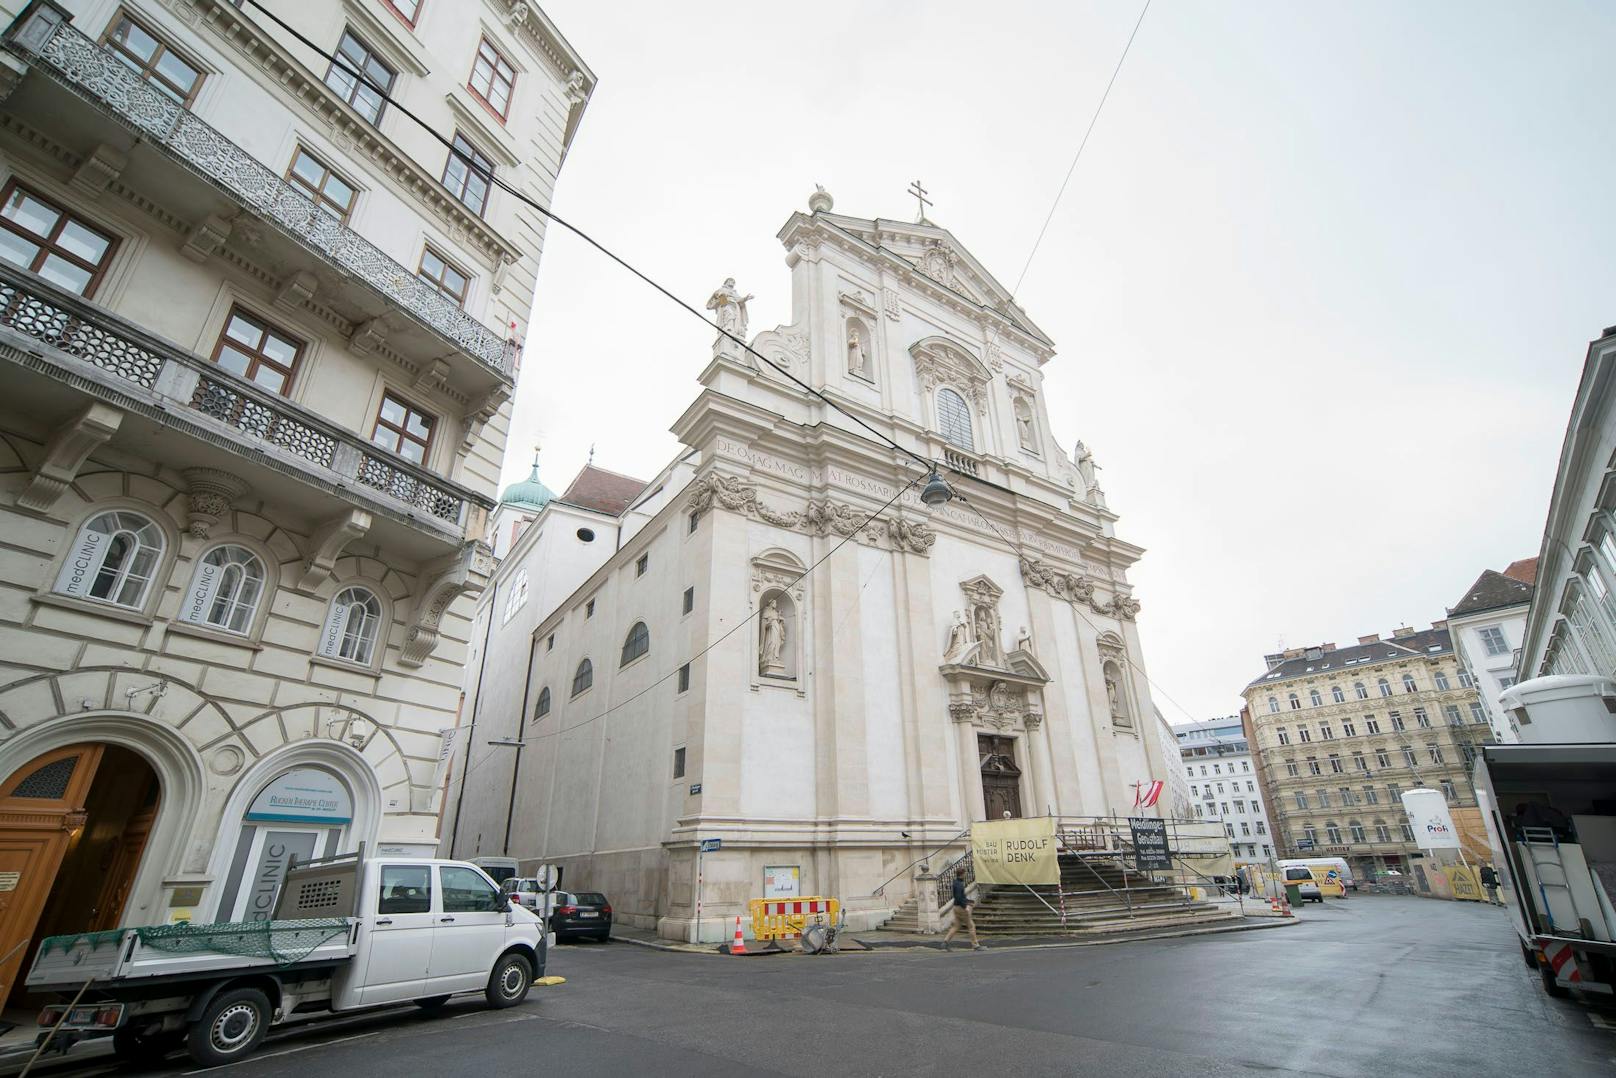 Die Dominikaner Kirche in der Postgasse (City) gilt als Wiens erste frühbarocke Kirche.